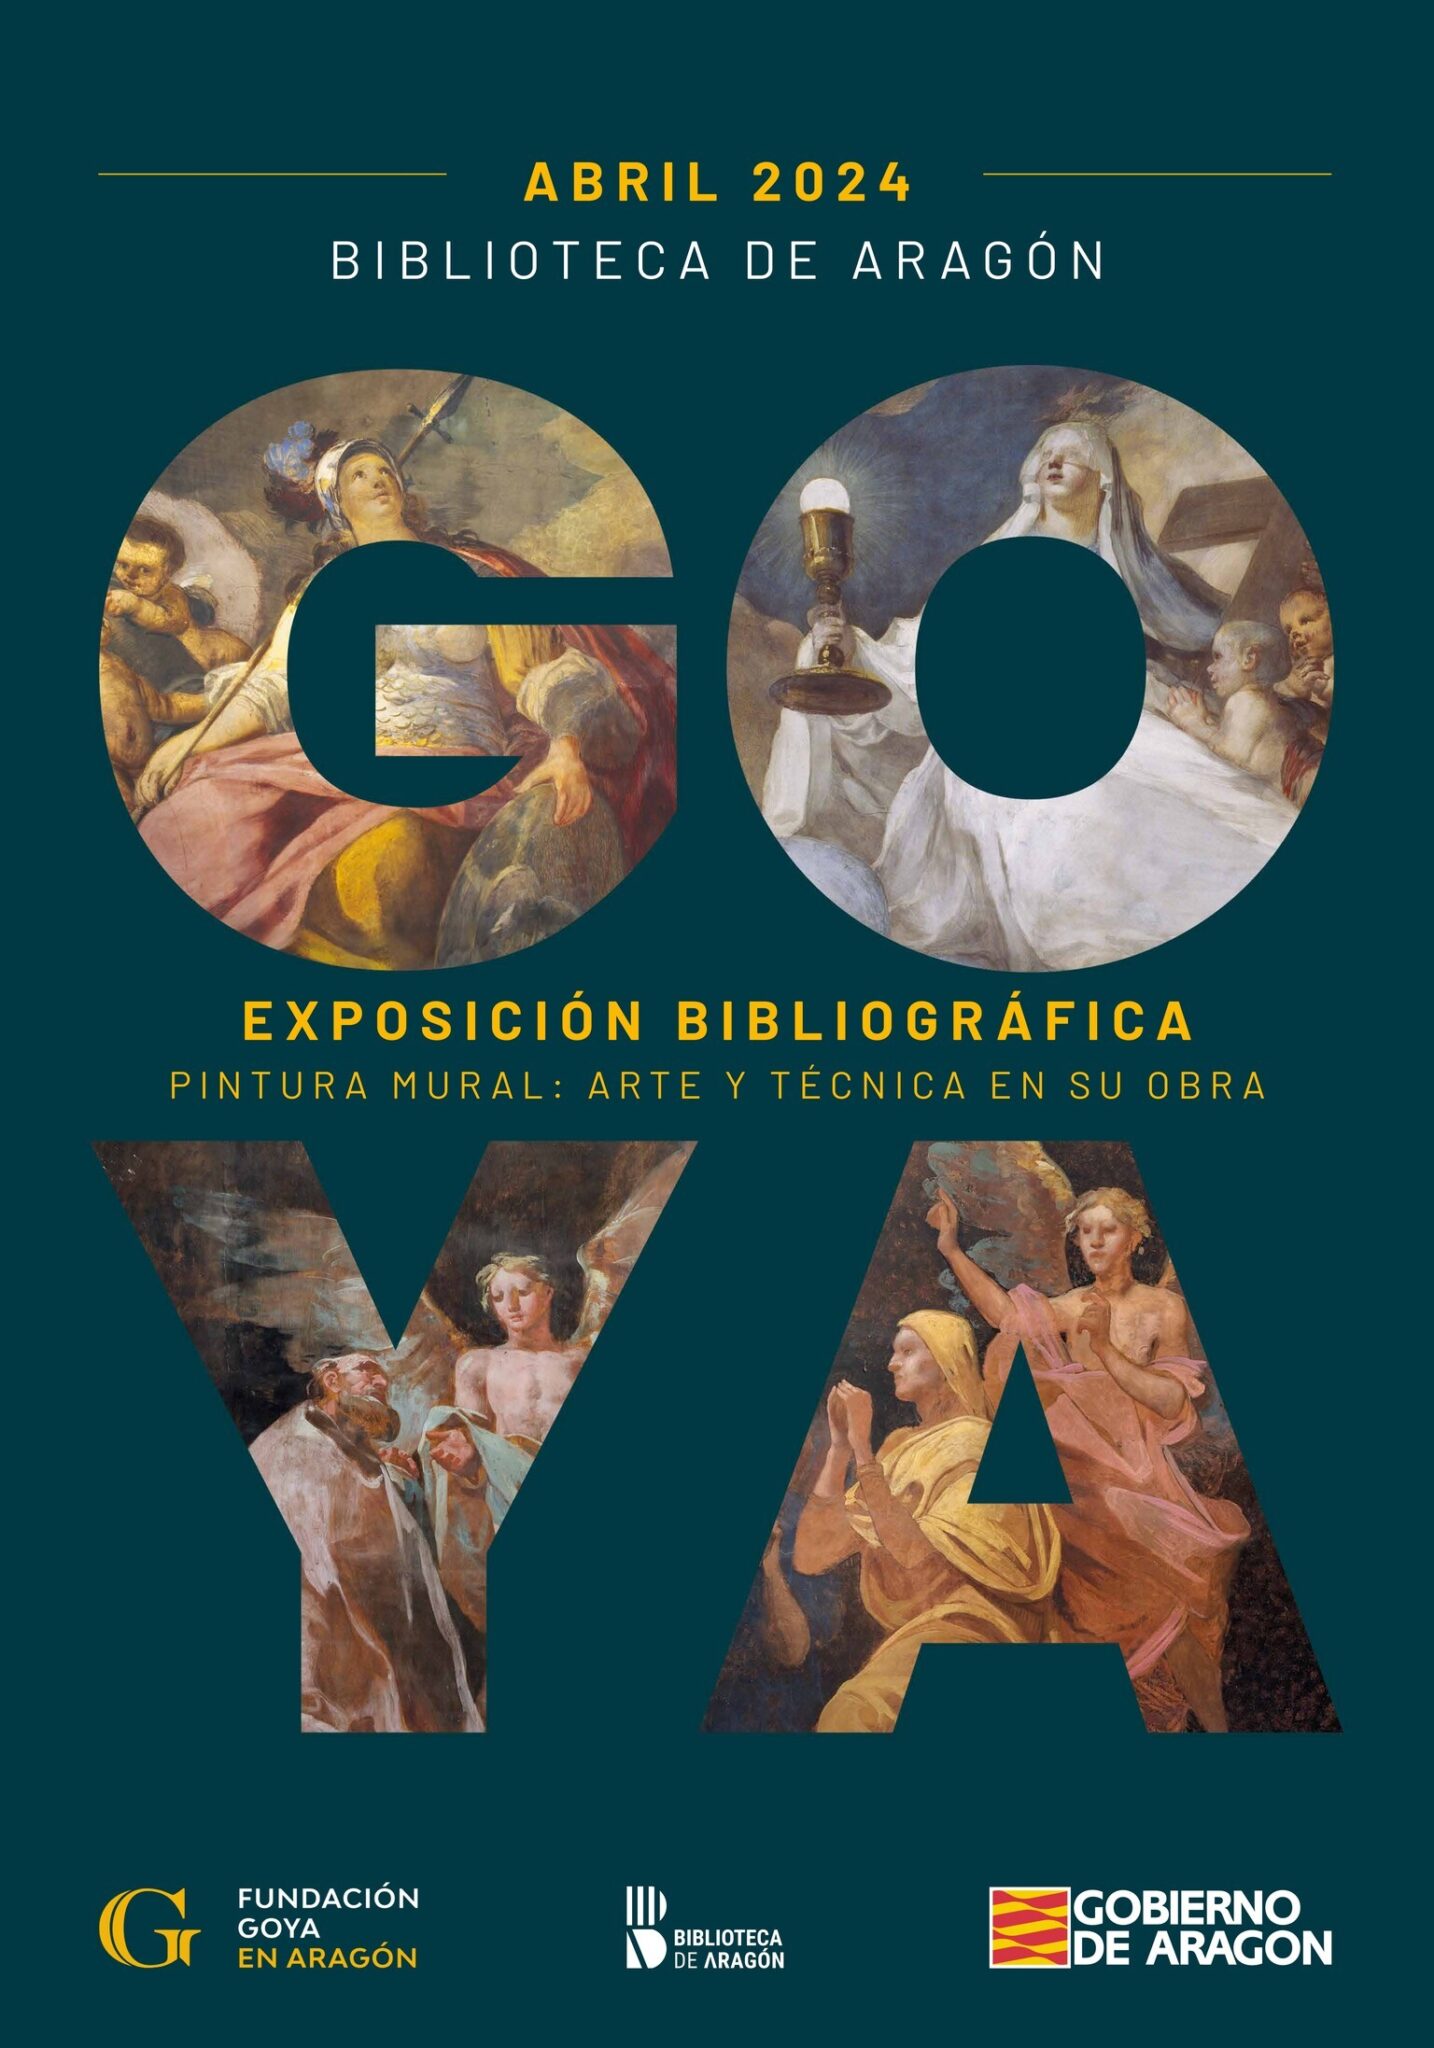 Goya. Pintura mural: arte y técnica en su obra